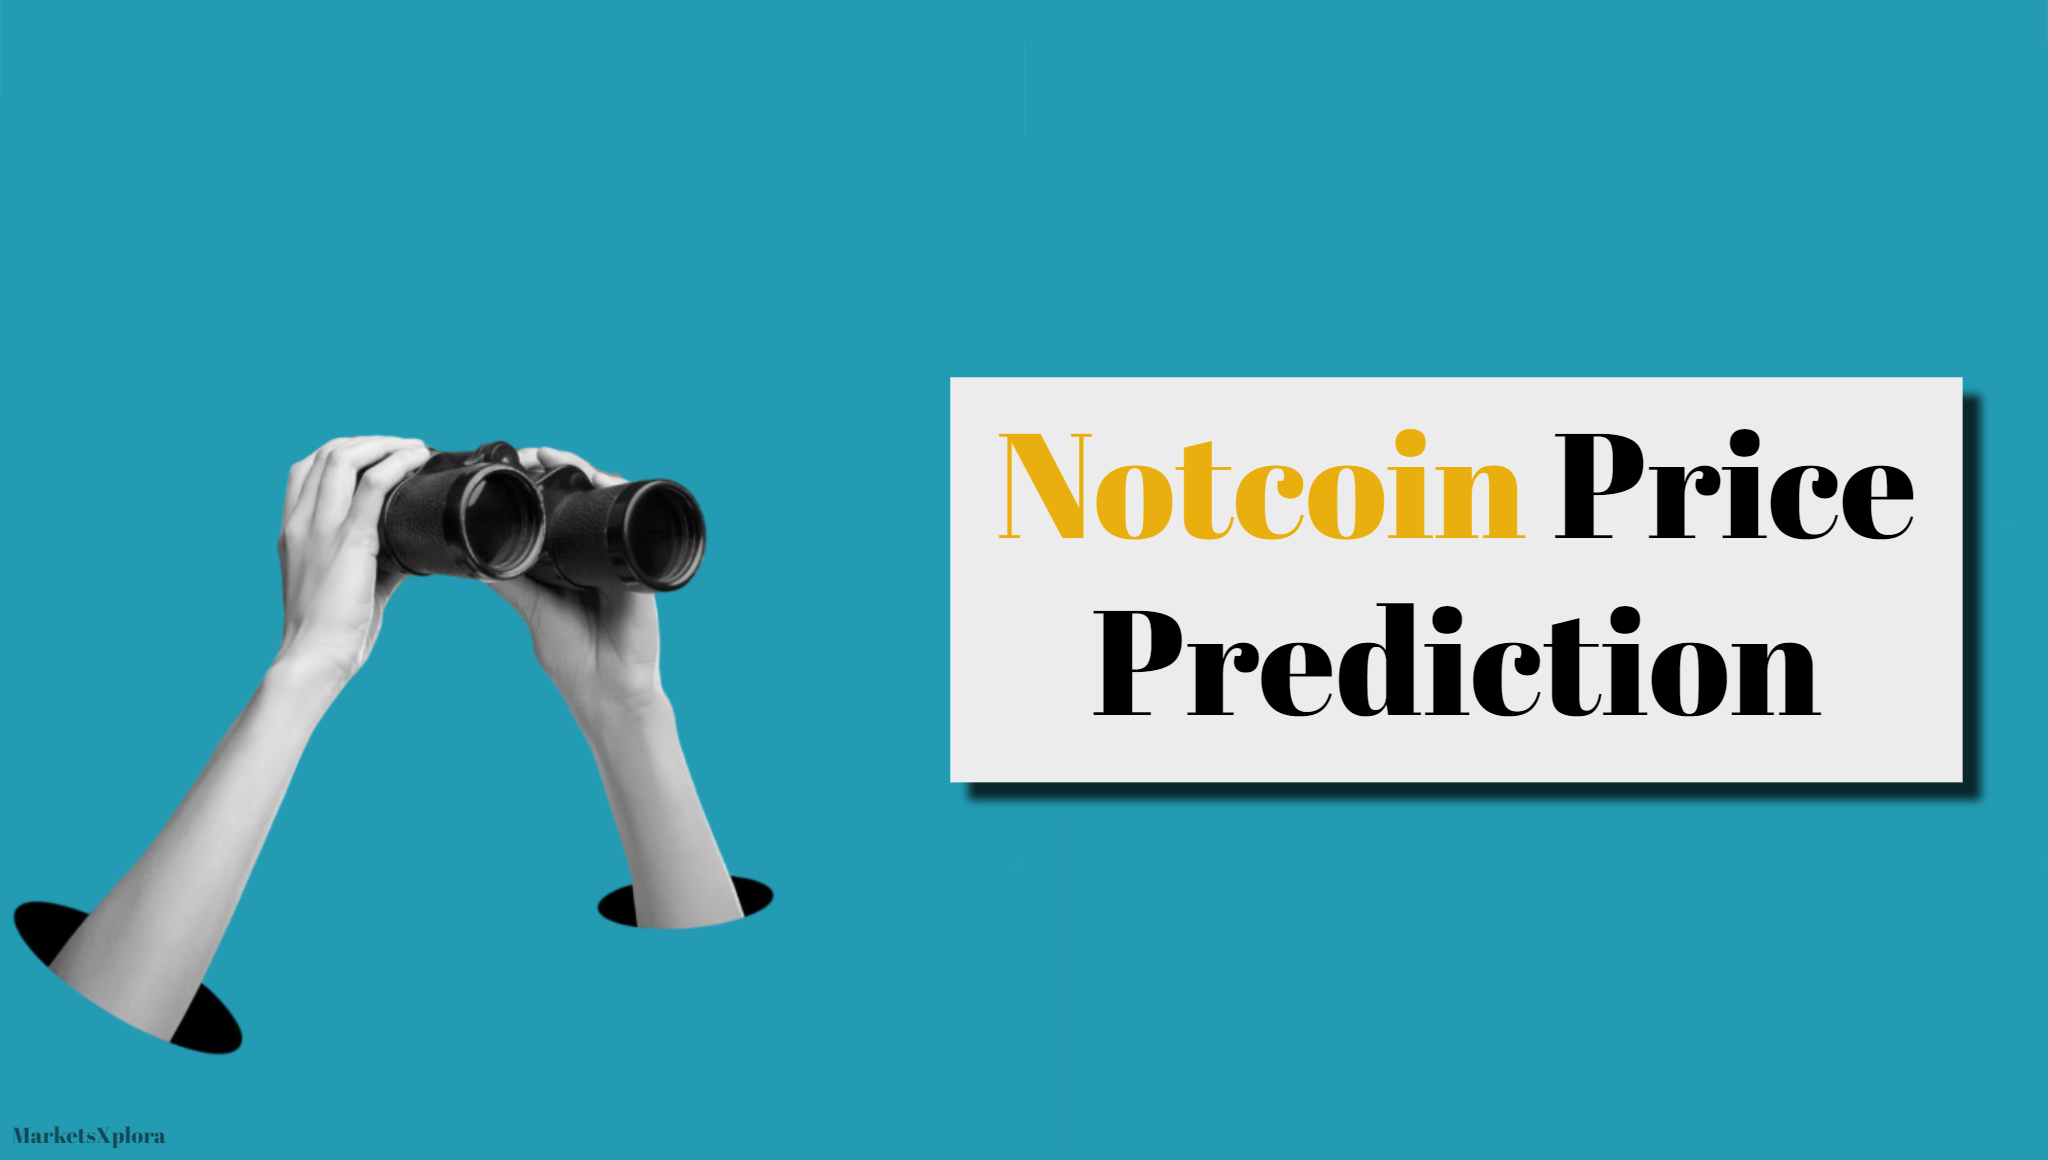 Notcoin Price Prediction